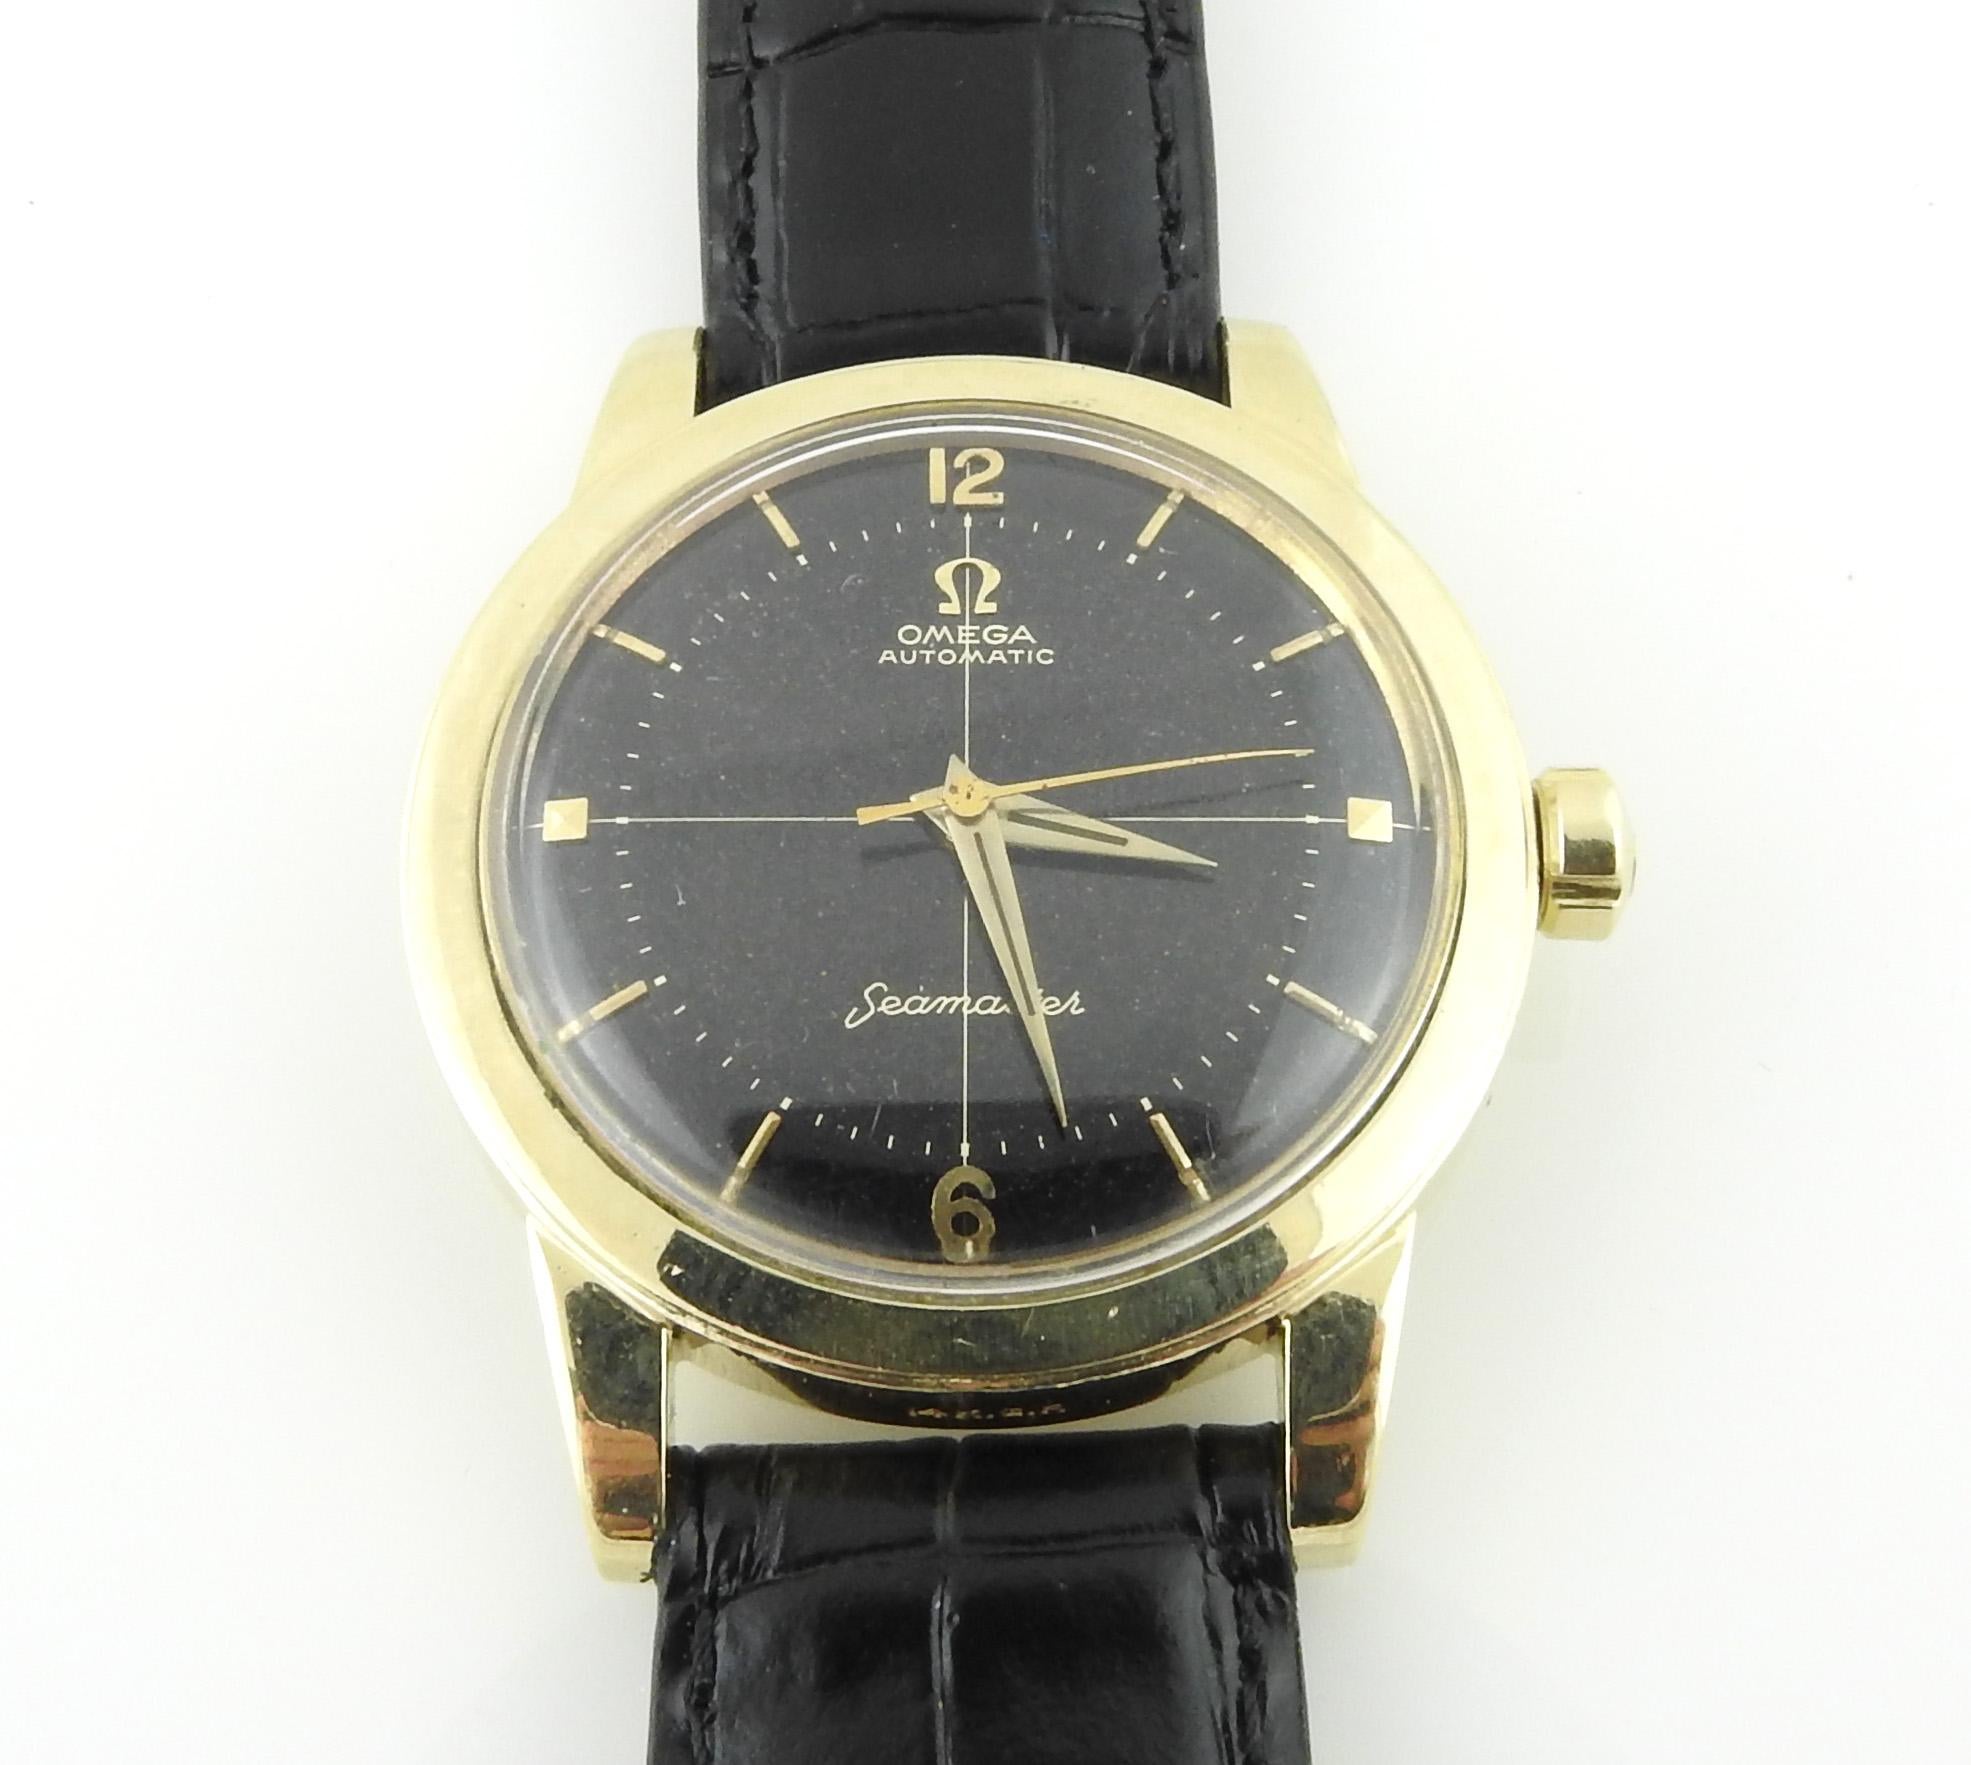 Vintage Omega Seamaster Watch

14K Gold Filled Omega Watch 

Black Dial

35mm case

Black leather band - not original omega

9.5